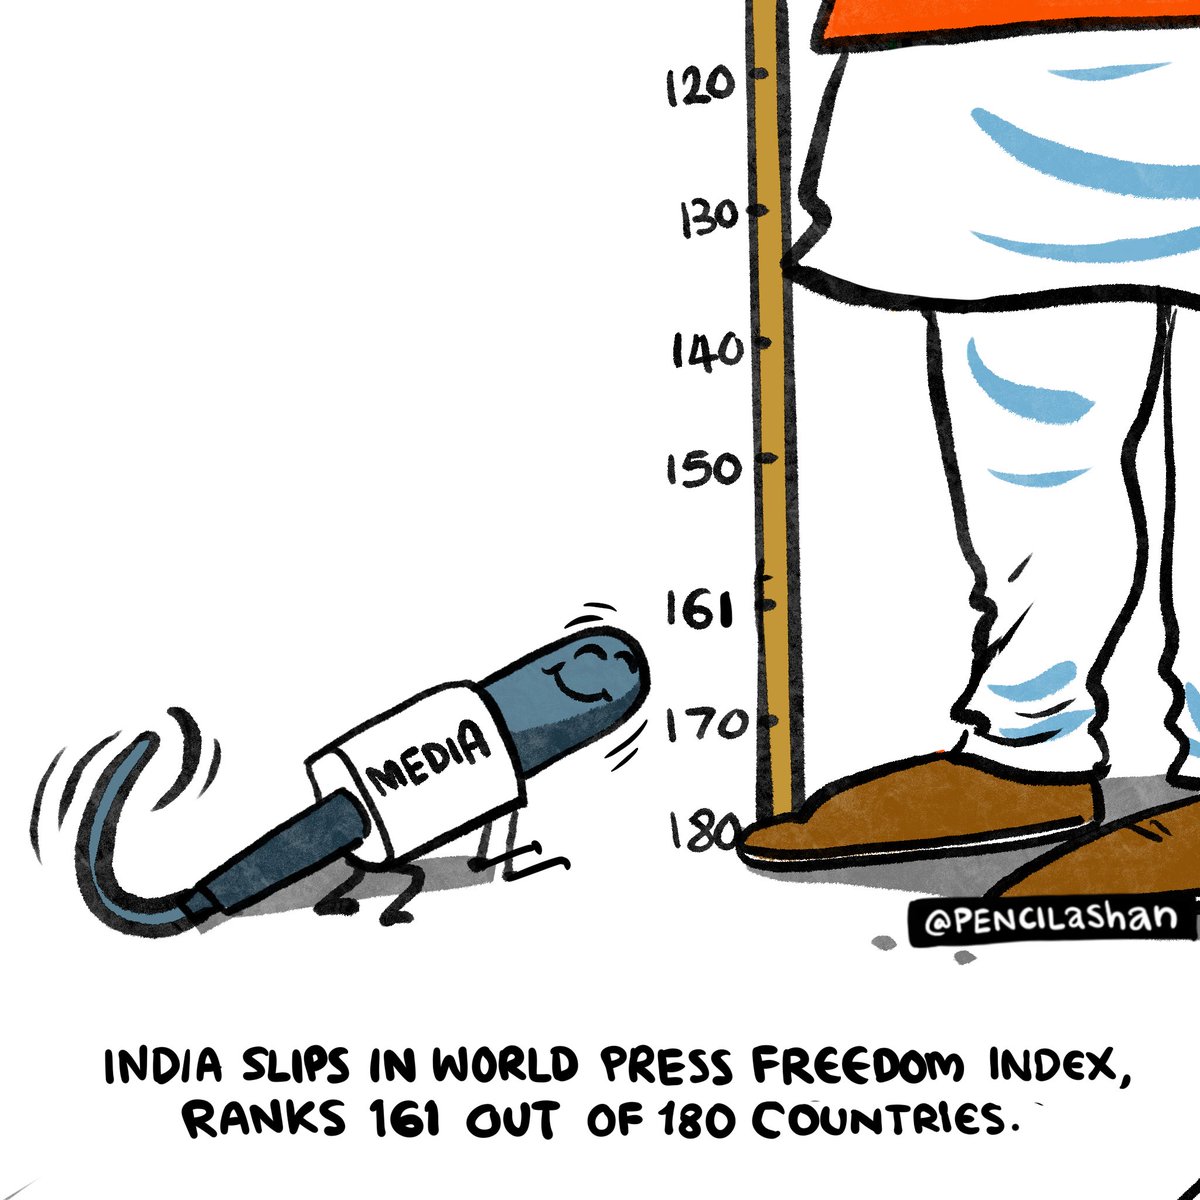 India’s press freedom ranking falls to 161 out of 180 countries. 😏😏 #saveindia #lastchancetosaveindia #votewisely #pressfreedomranking #indianmedias #indiannewsmedia #indiannews #indiannewschannels #india #indians #modi